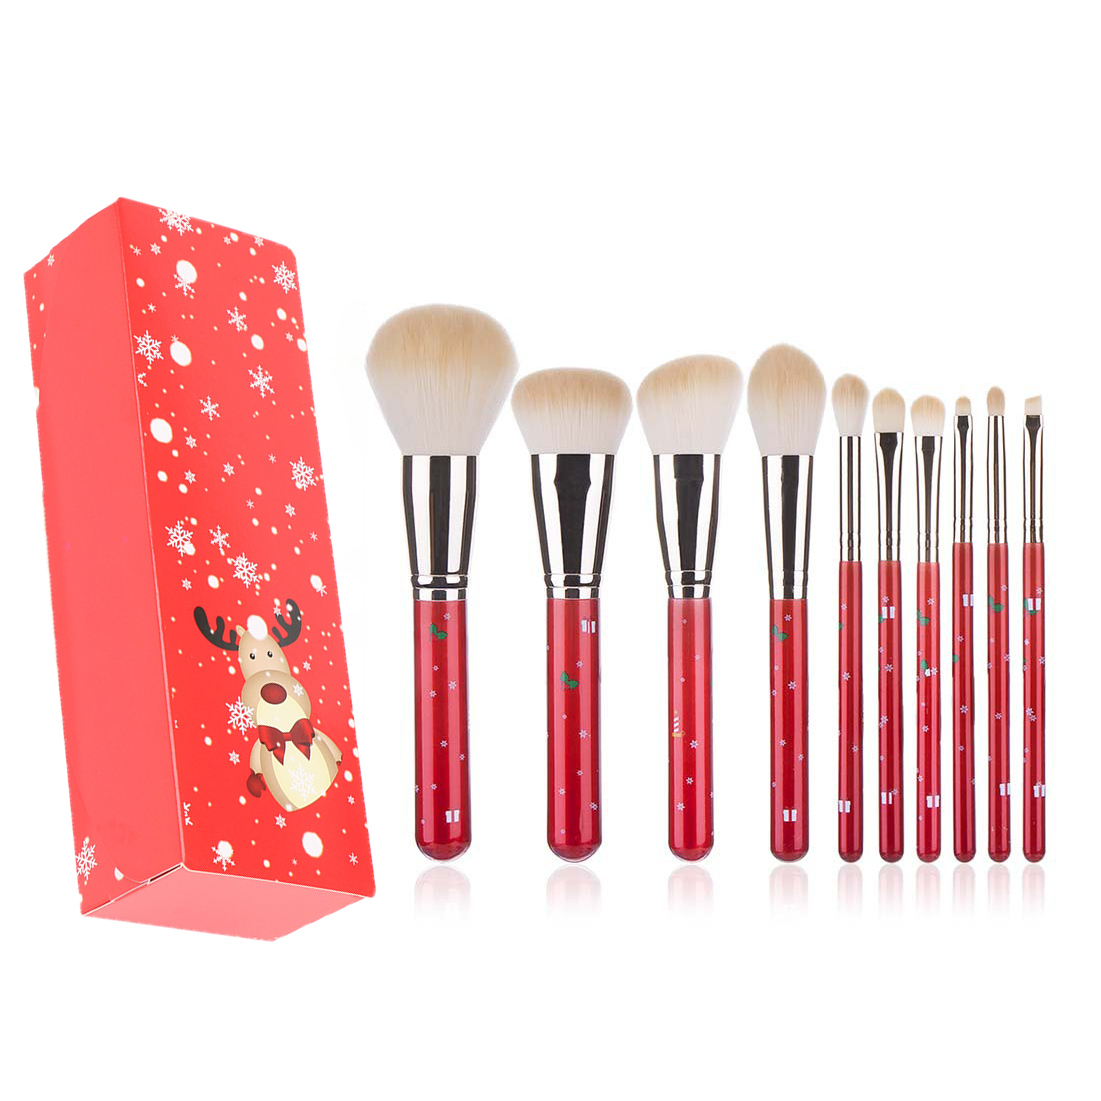 10pcs In 1 Christmas Makeup Brush Set With Powder Brush, Foundation Brush, Contour Brush, Highlight Brush, Eye Shadow Brush, Fully Functiona